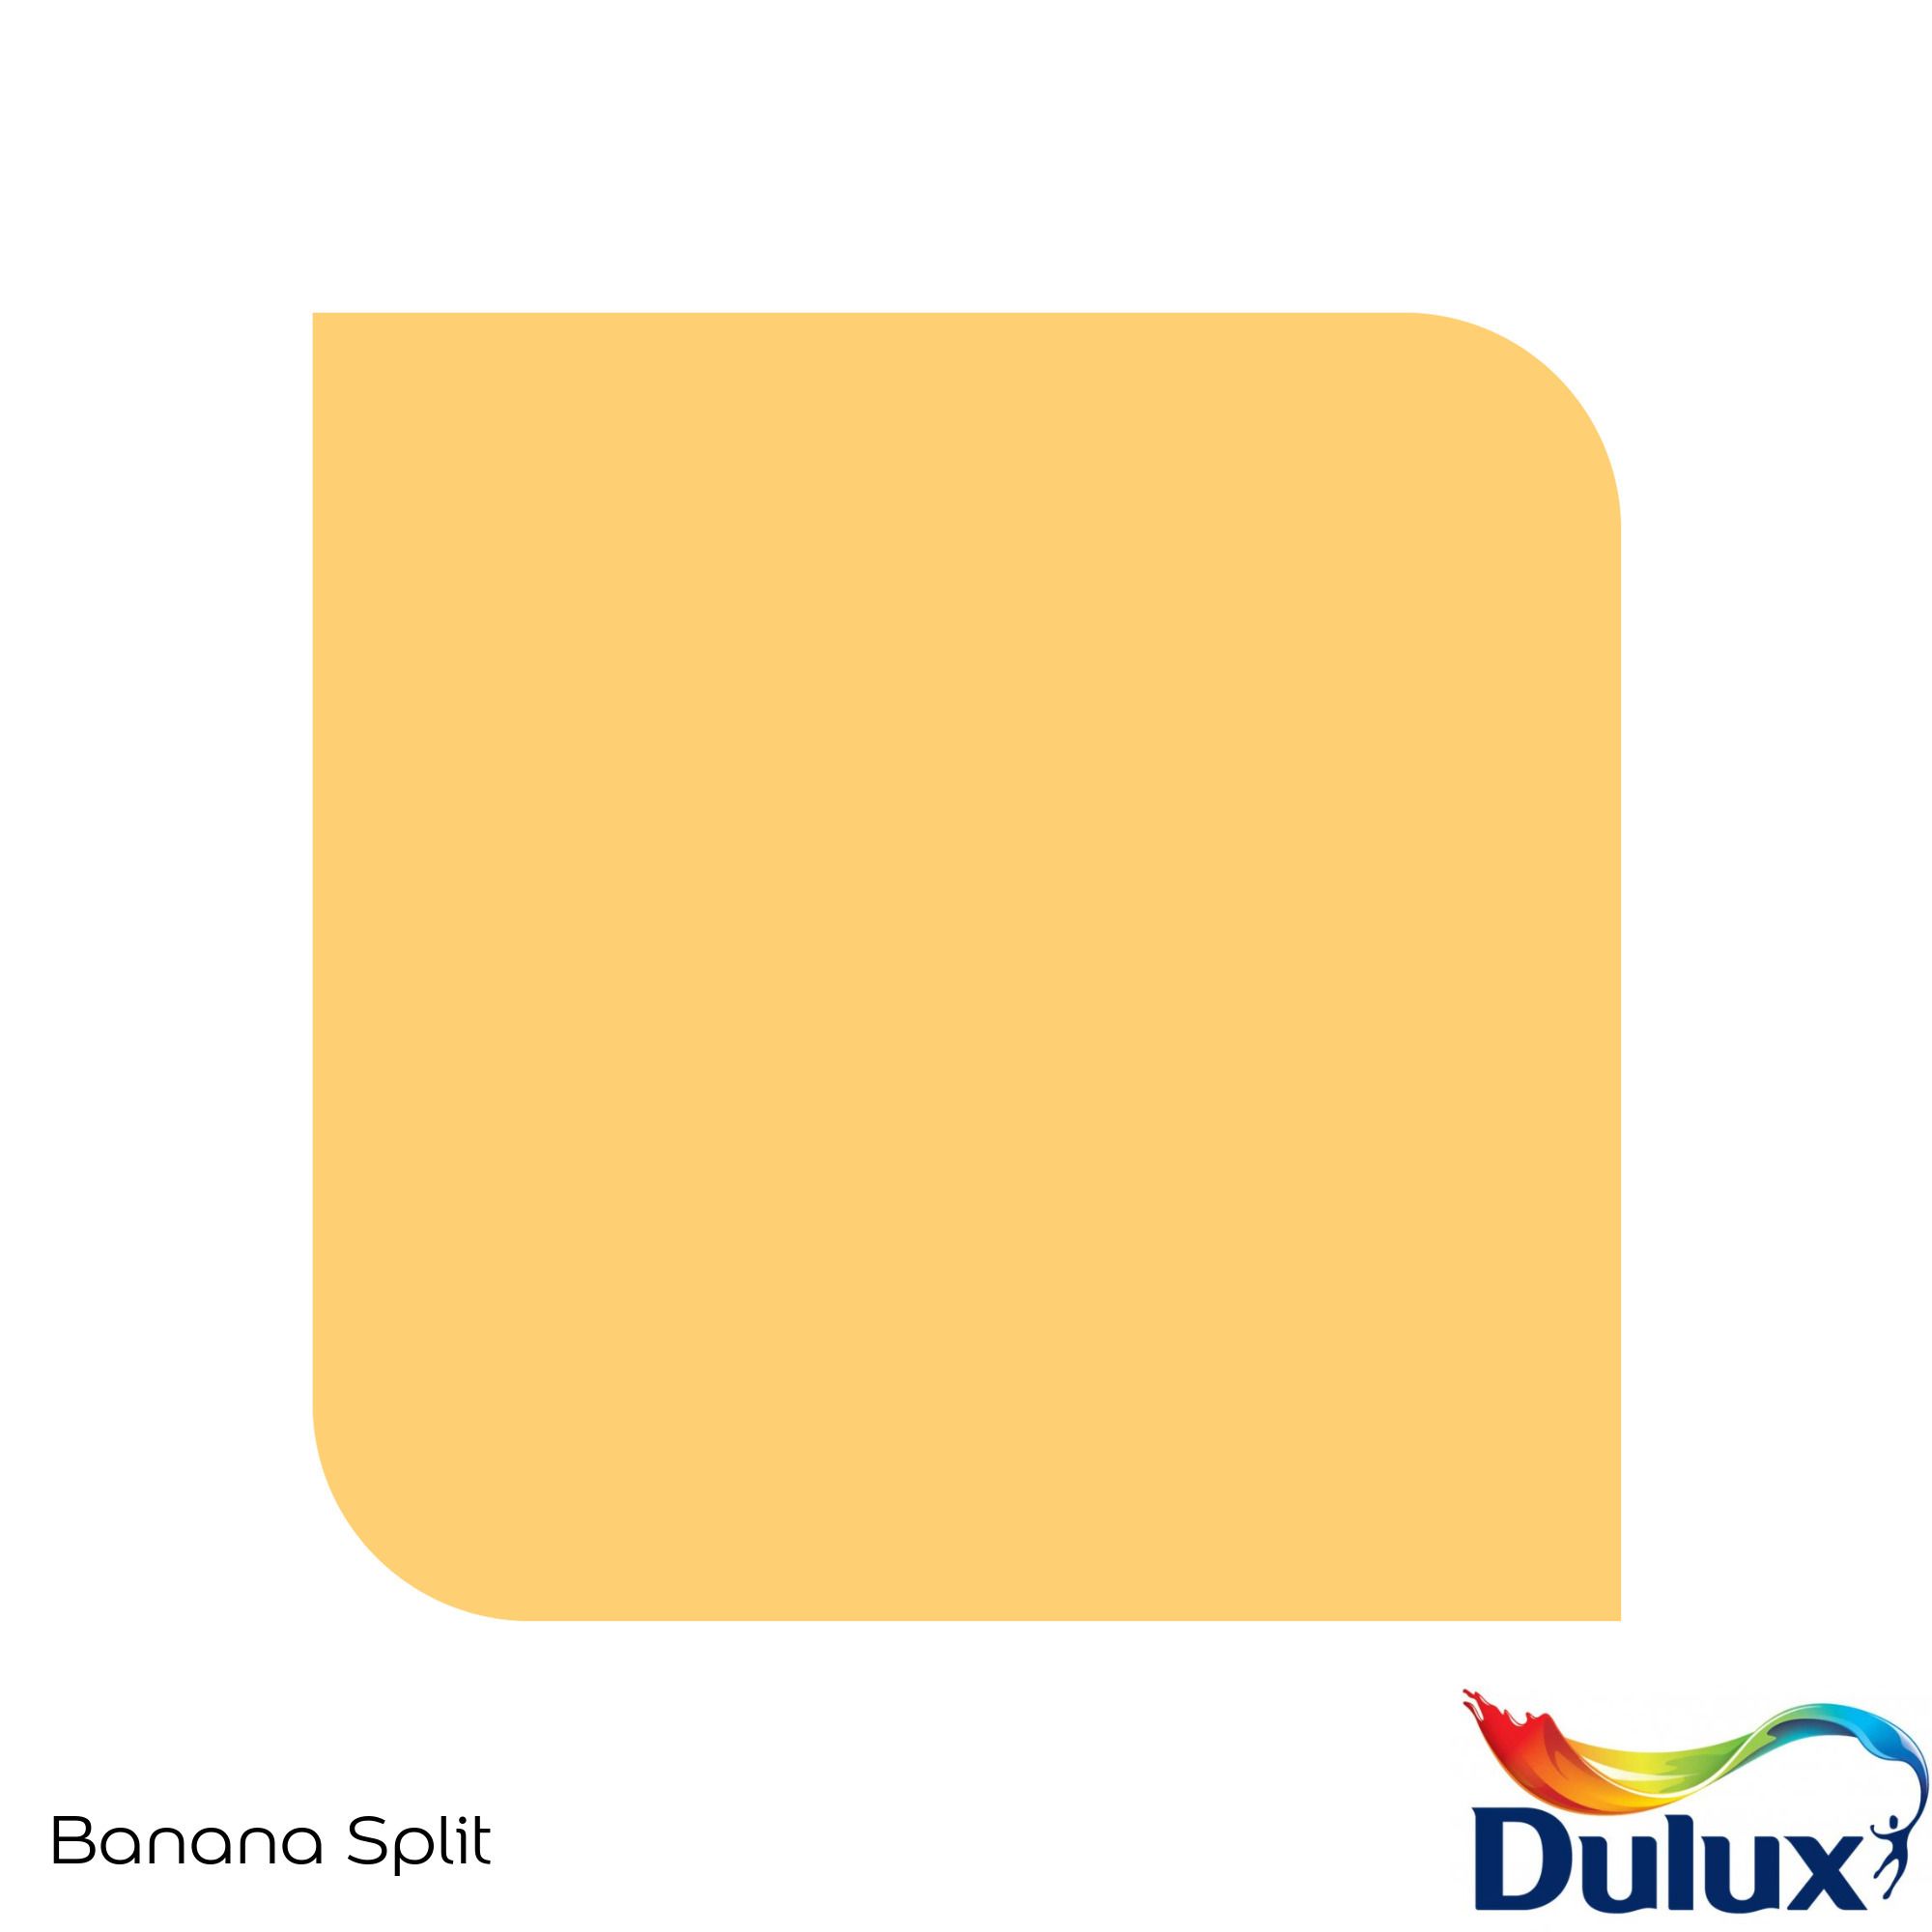 Dulux Standard Banana split Matt Emulsion paint, 30ml